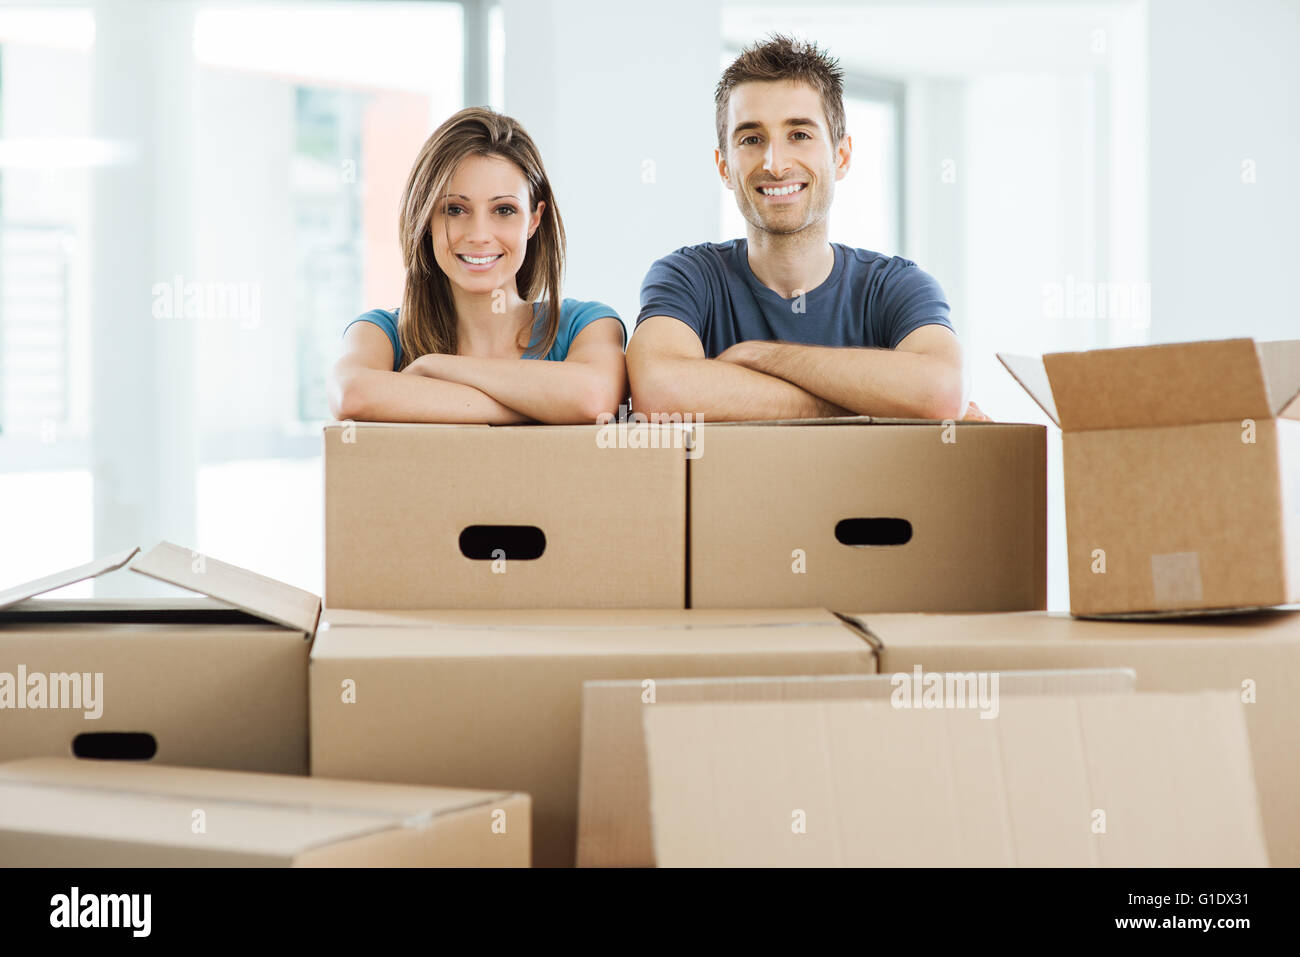 Junges Paar posiert mit Arme gekreuzt, stützte sich auf Kartons und lächelt in die Kamera, home Umzug Konzept Stockfoto